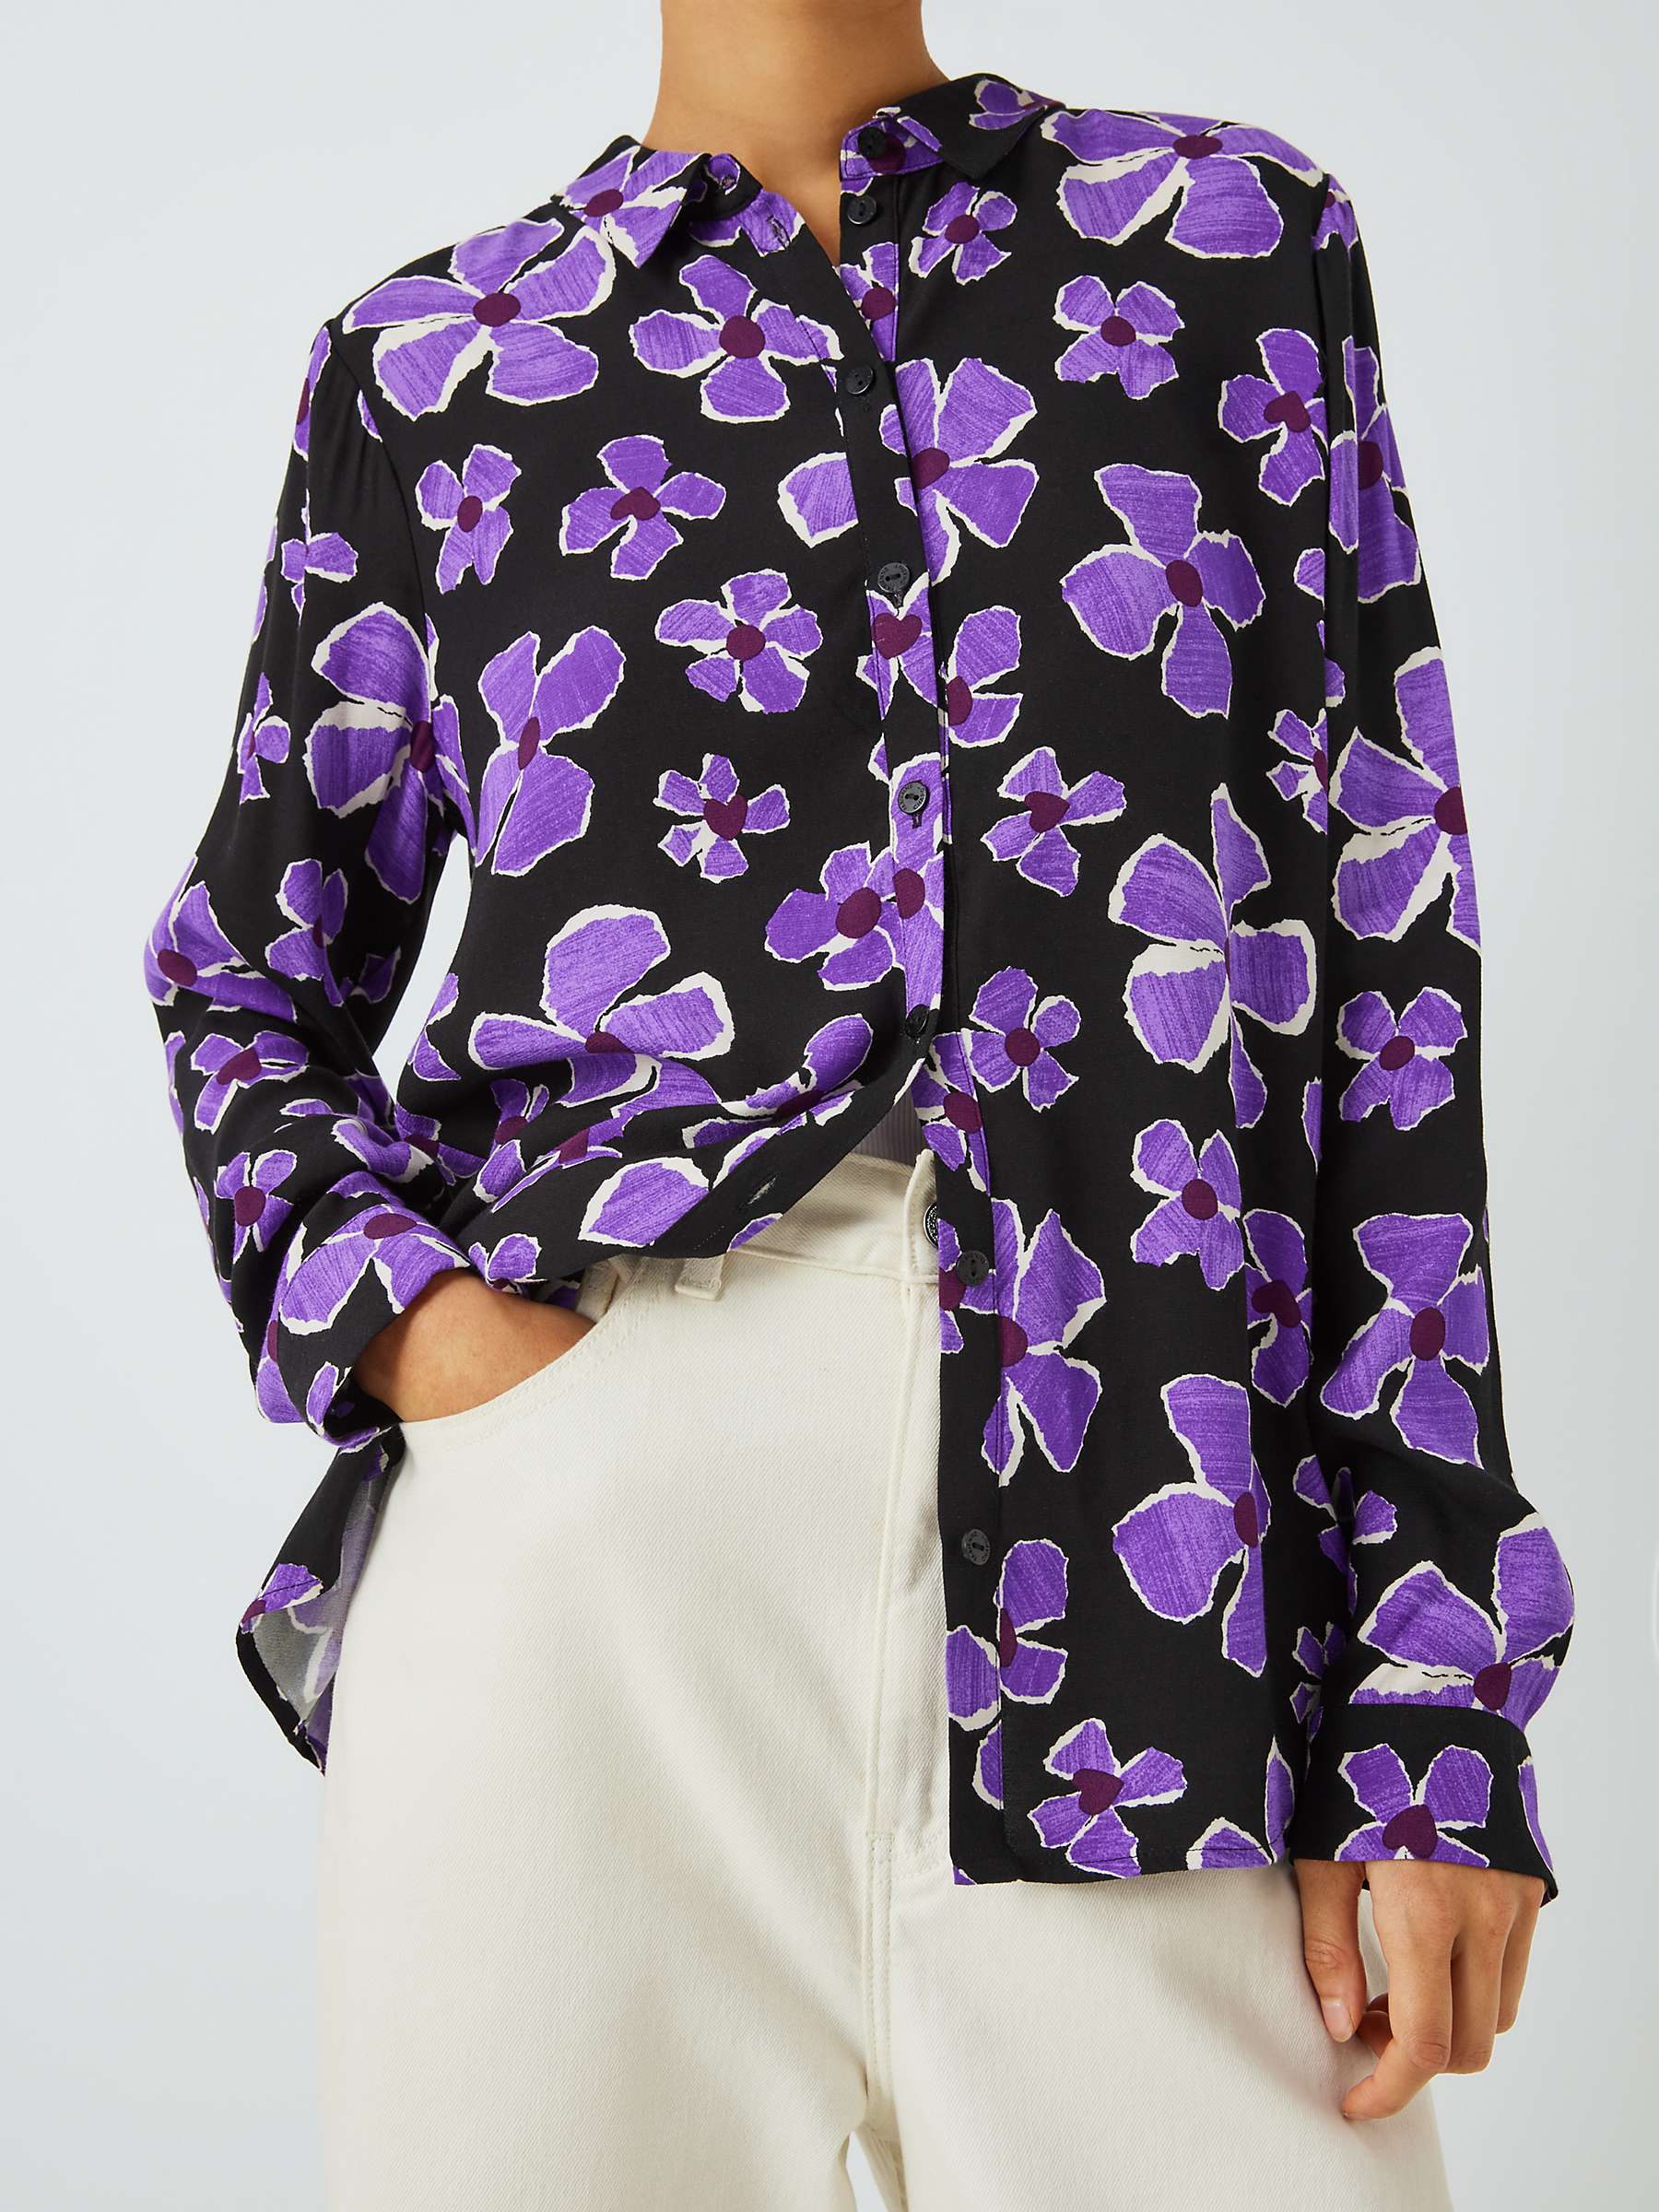 Buy Fabienne Chapot Sophia Floral Print Blouse, Black/Purple Rave Online at johnlewis.com